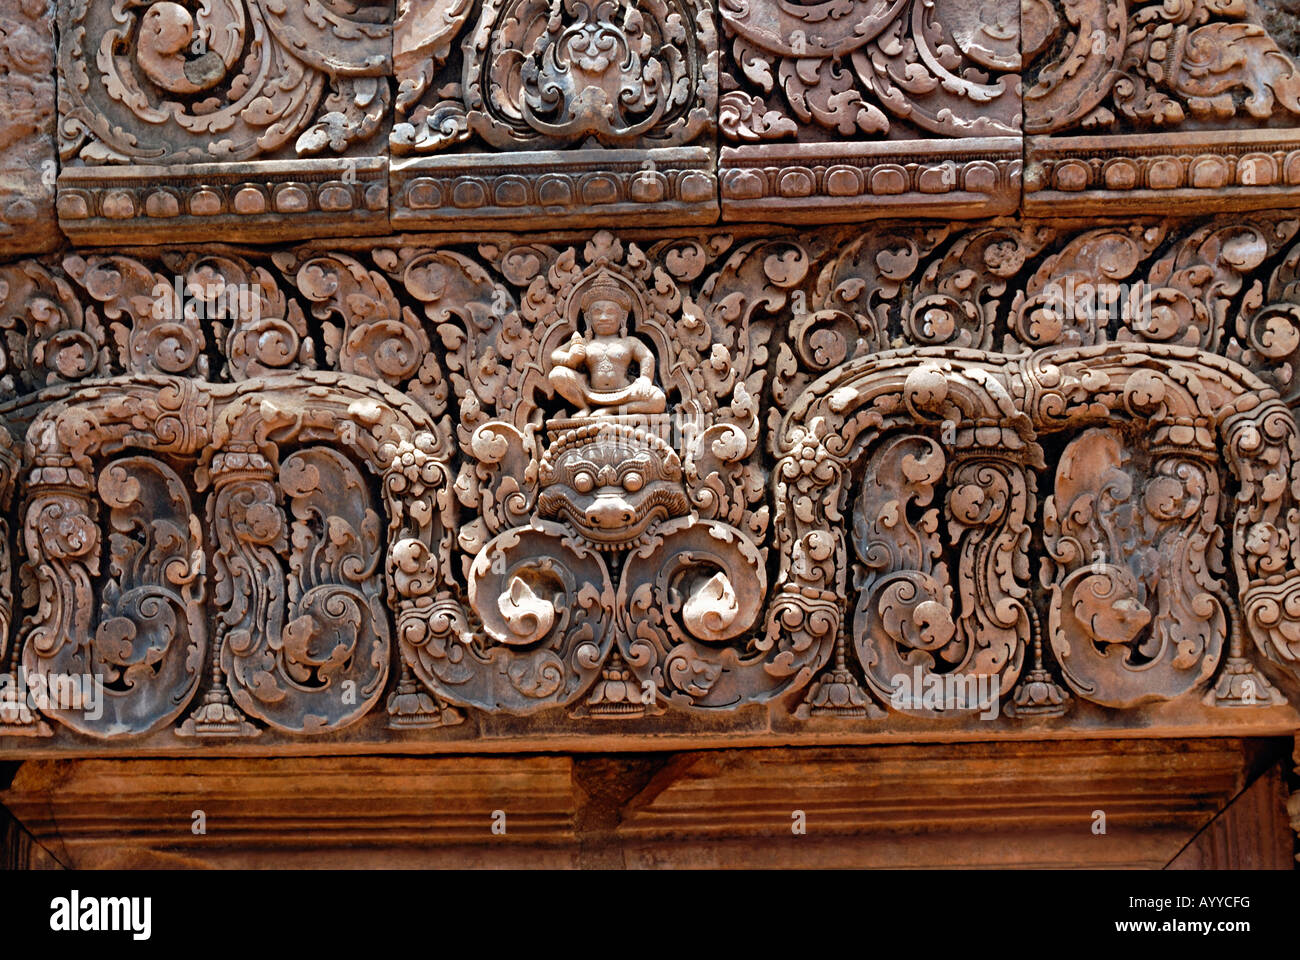 Cambodge, Benteay Srei 10ème siècle A.D. Le sud de l'culte montrant decorative morte en bas. Banque D'Images